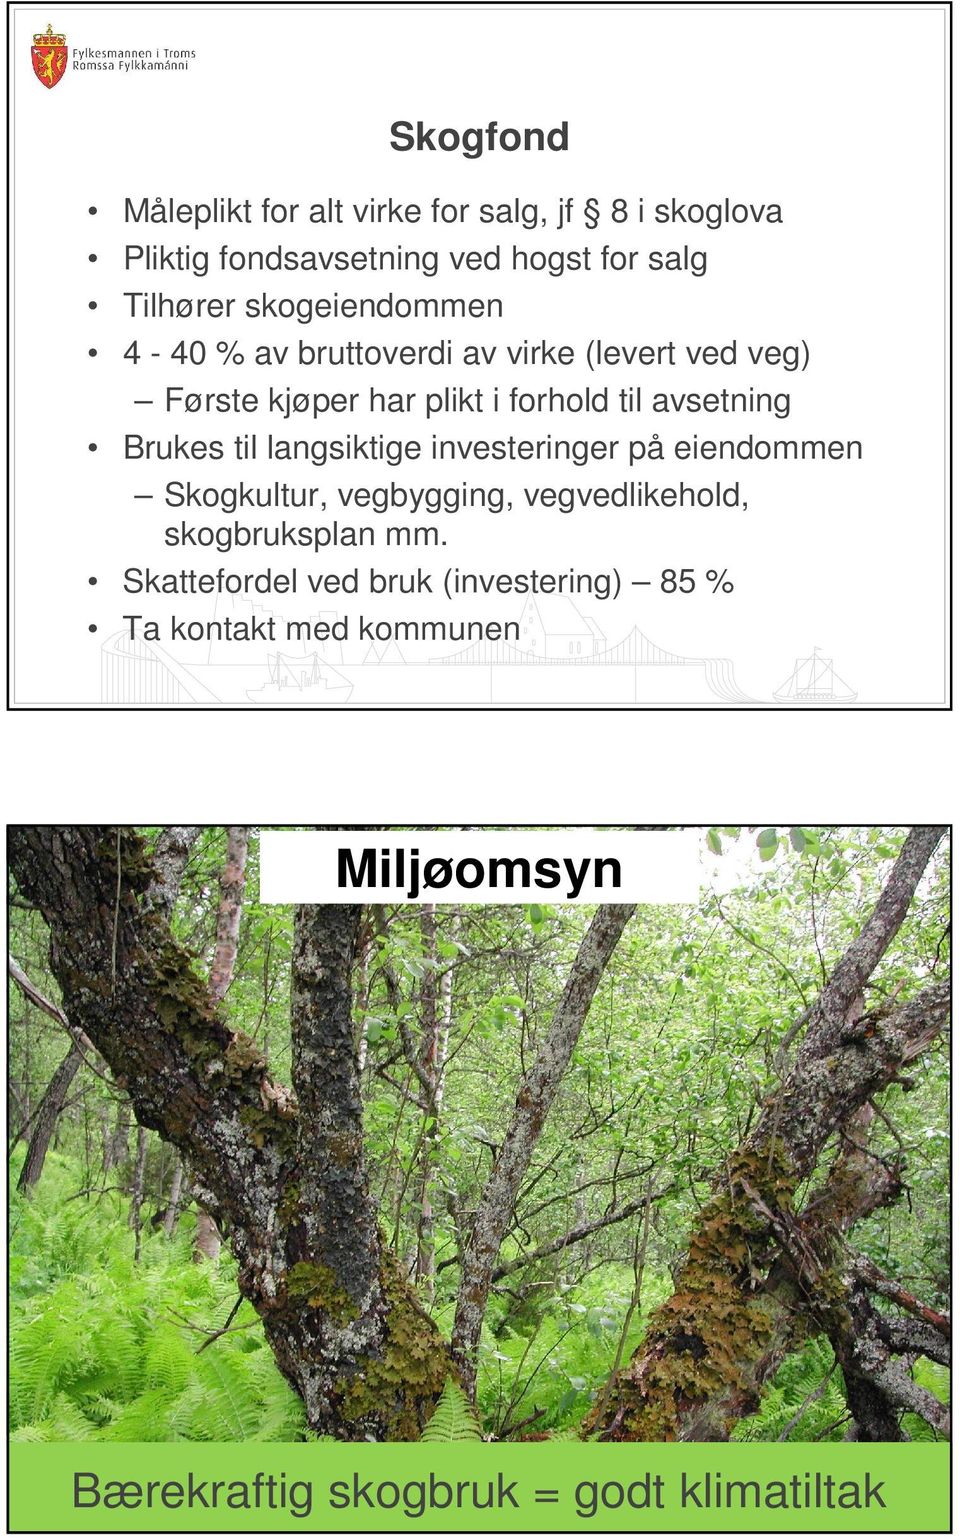 Brukes til langsiktige investeringer på eiendommen Skogkultur, vegbygging, vegvedlikehold, skogbruksplan mm.